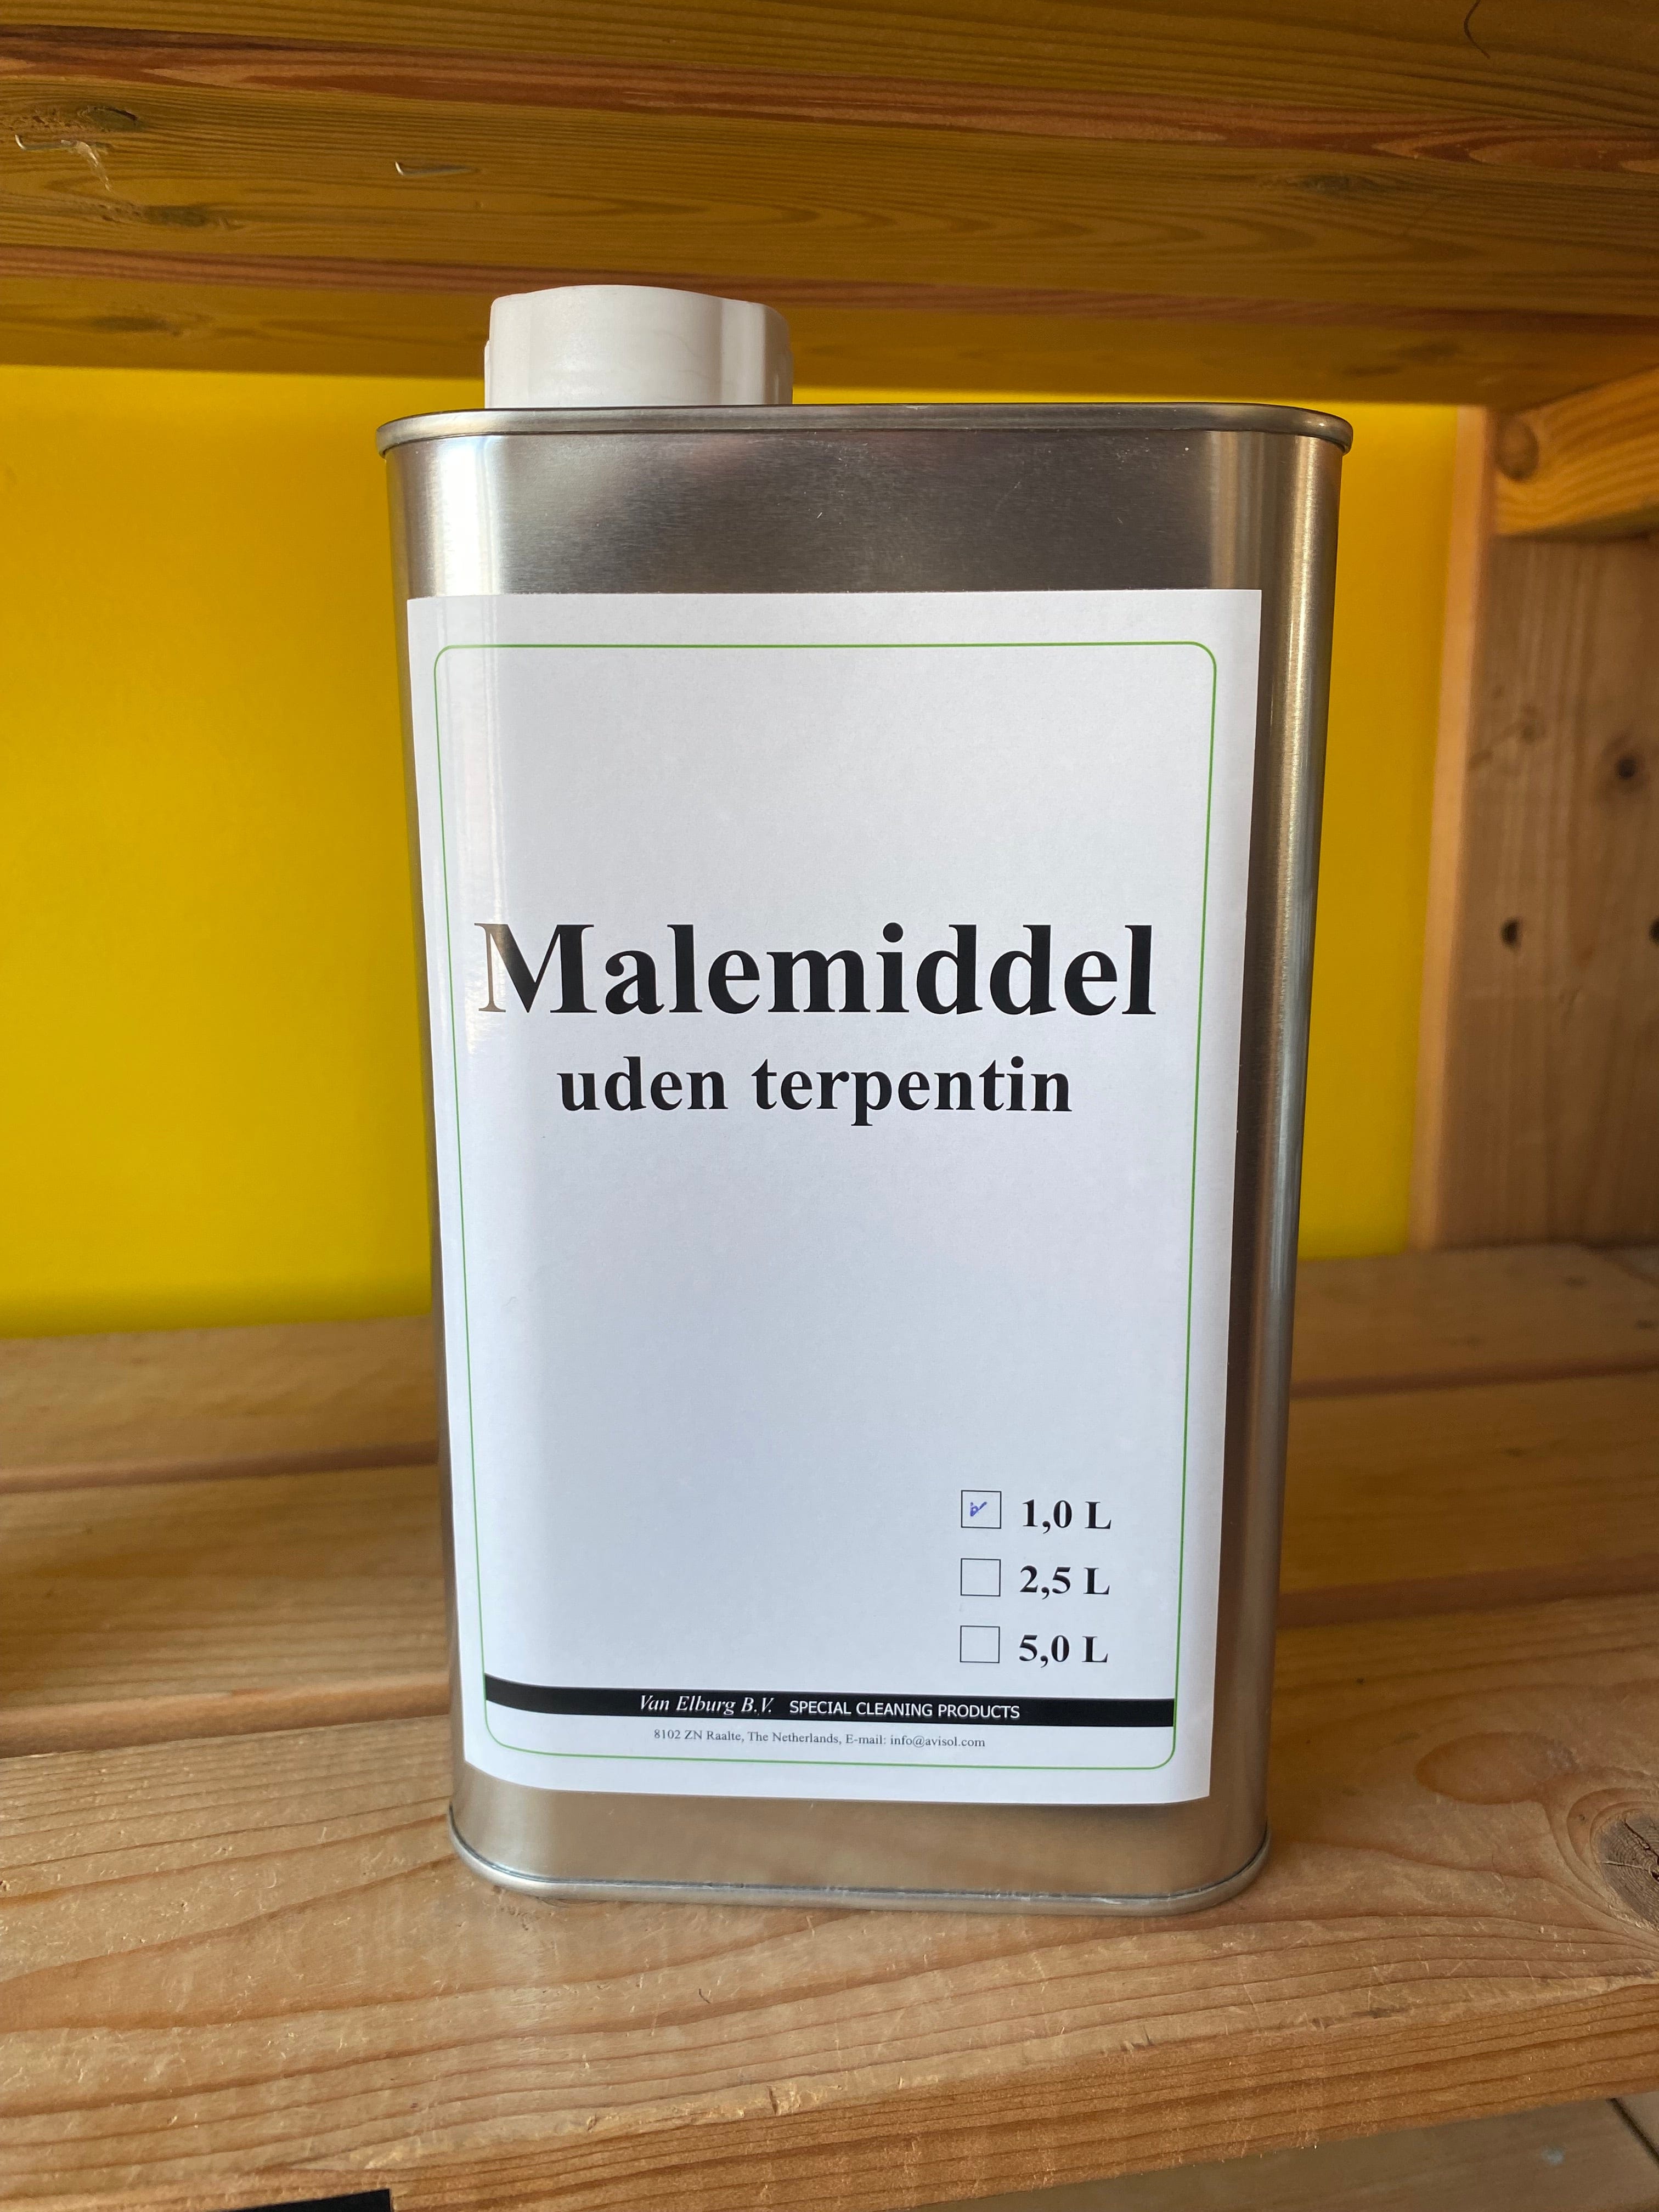 Stellings Paint Mediums 1000 ml Malemiddel uden terpentin